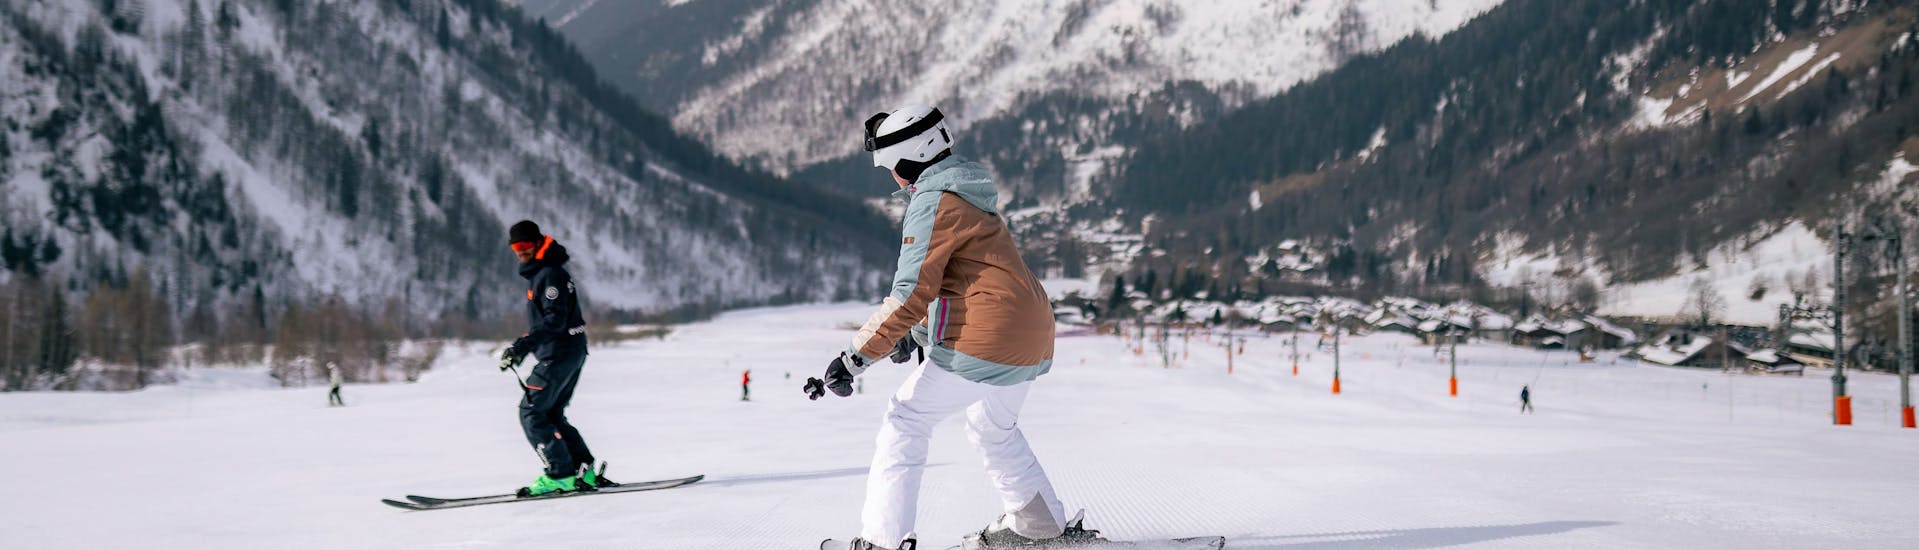 Lezioni di sci per adulti (dai 13 anni) a Chamonix/Savoia - 4 giorni (dom-mer).